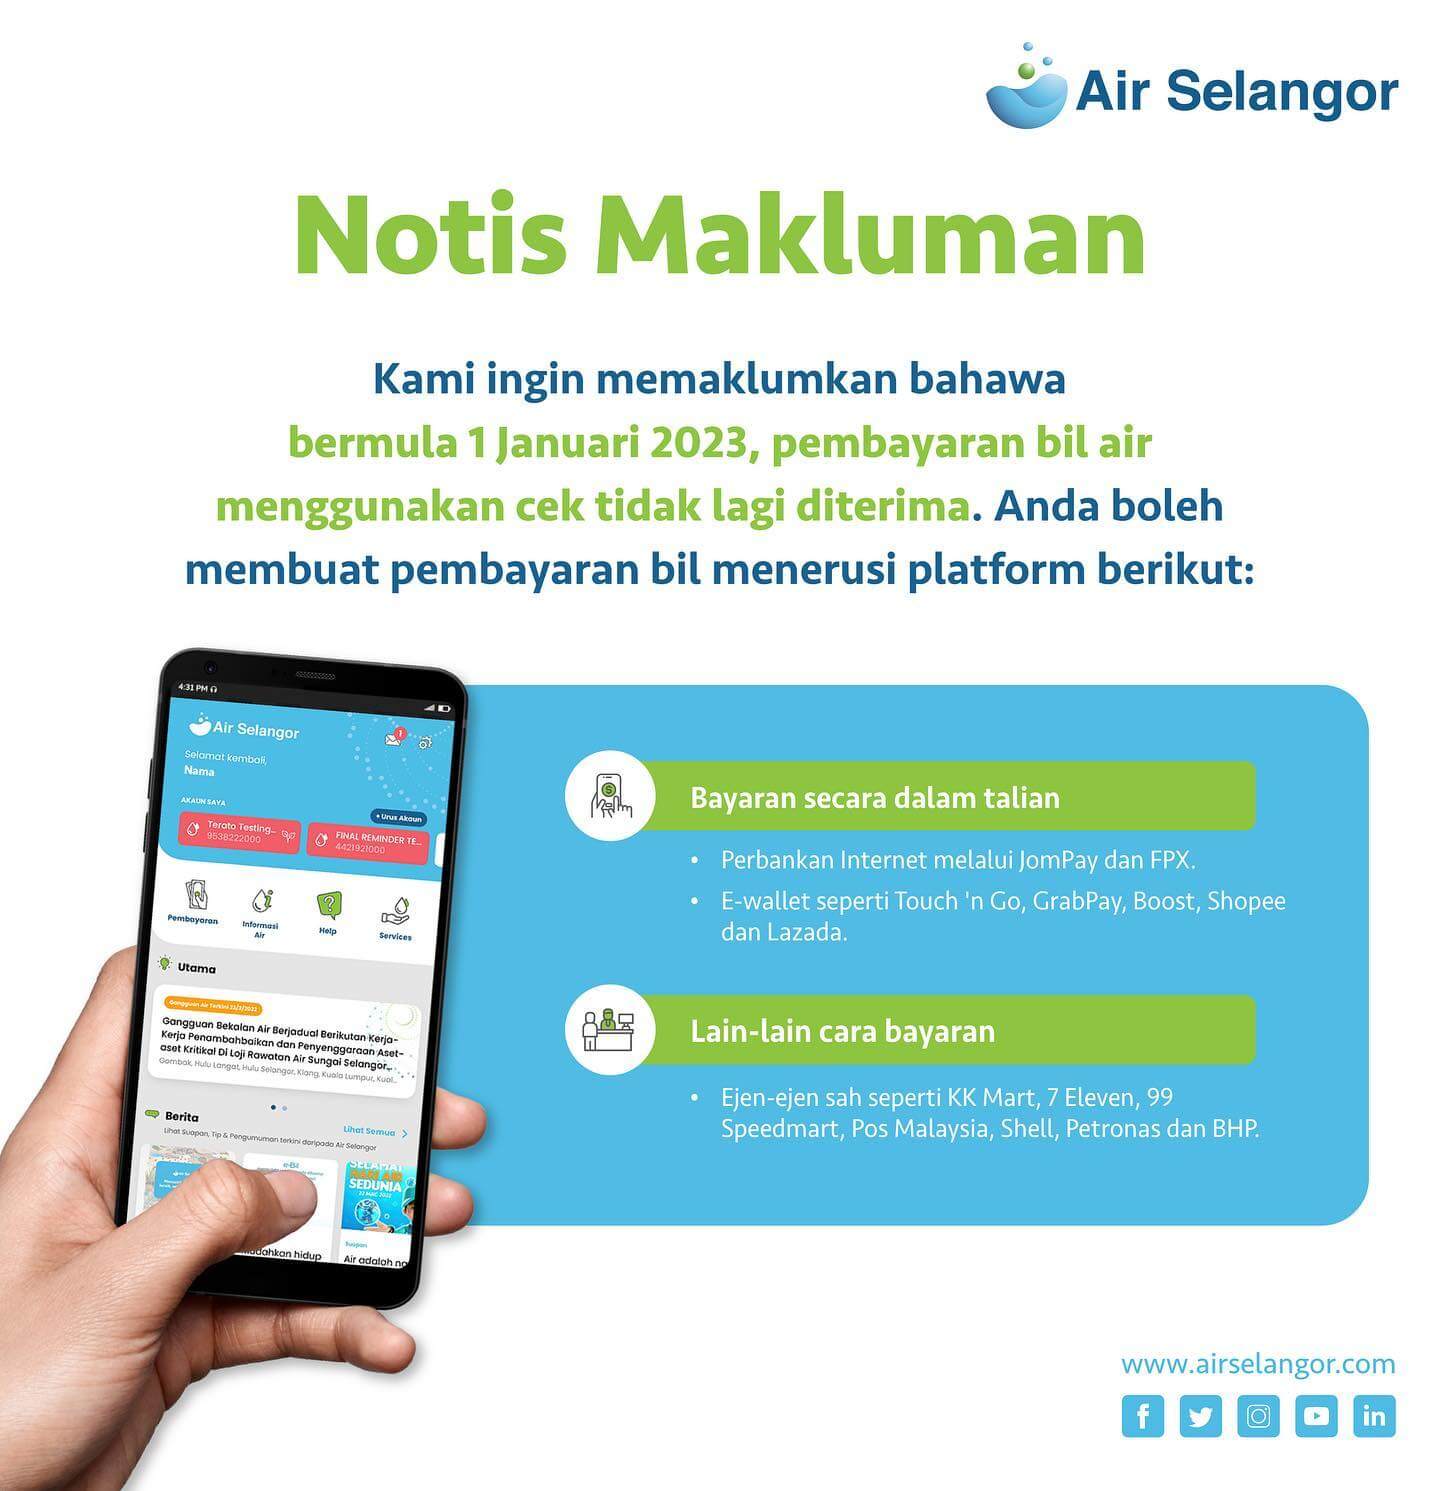 Notis Makluman 4 June 2022 Hydro Hub Air Selangor